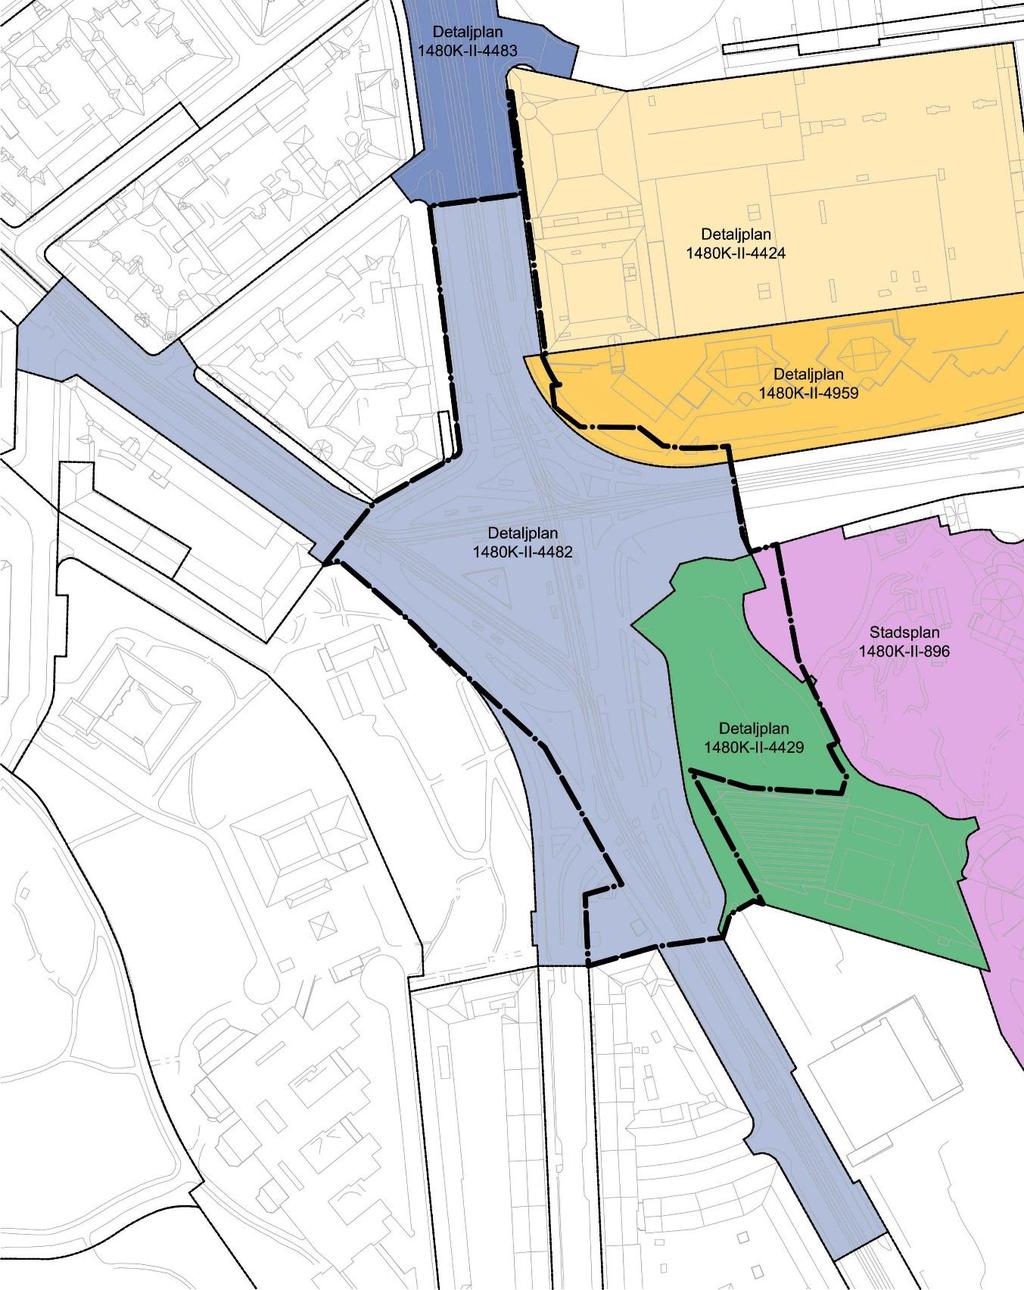 Kartan visar gällande detaljplaner som påverkas av föreslagen detaljplan för Korsvägen.